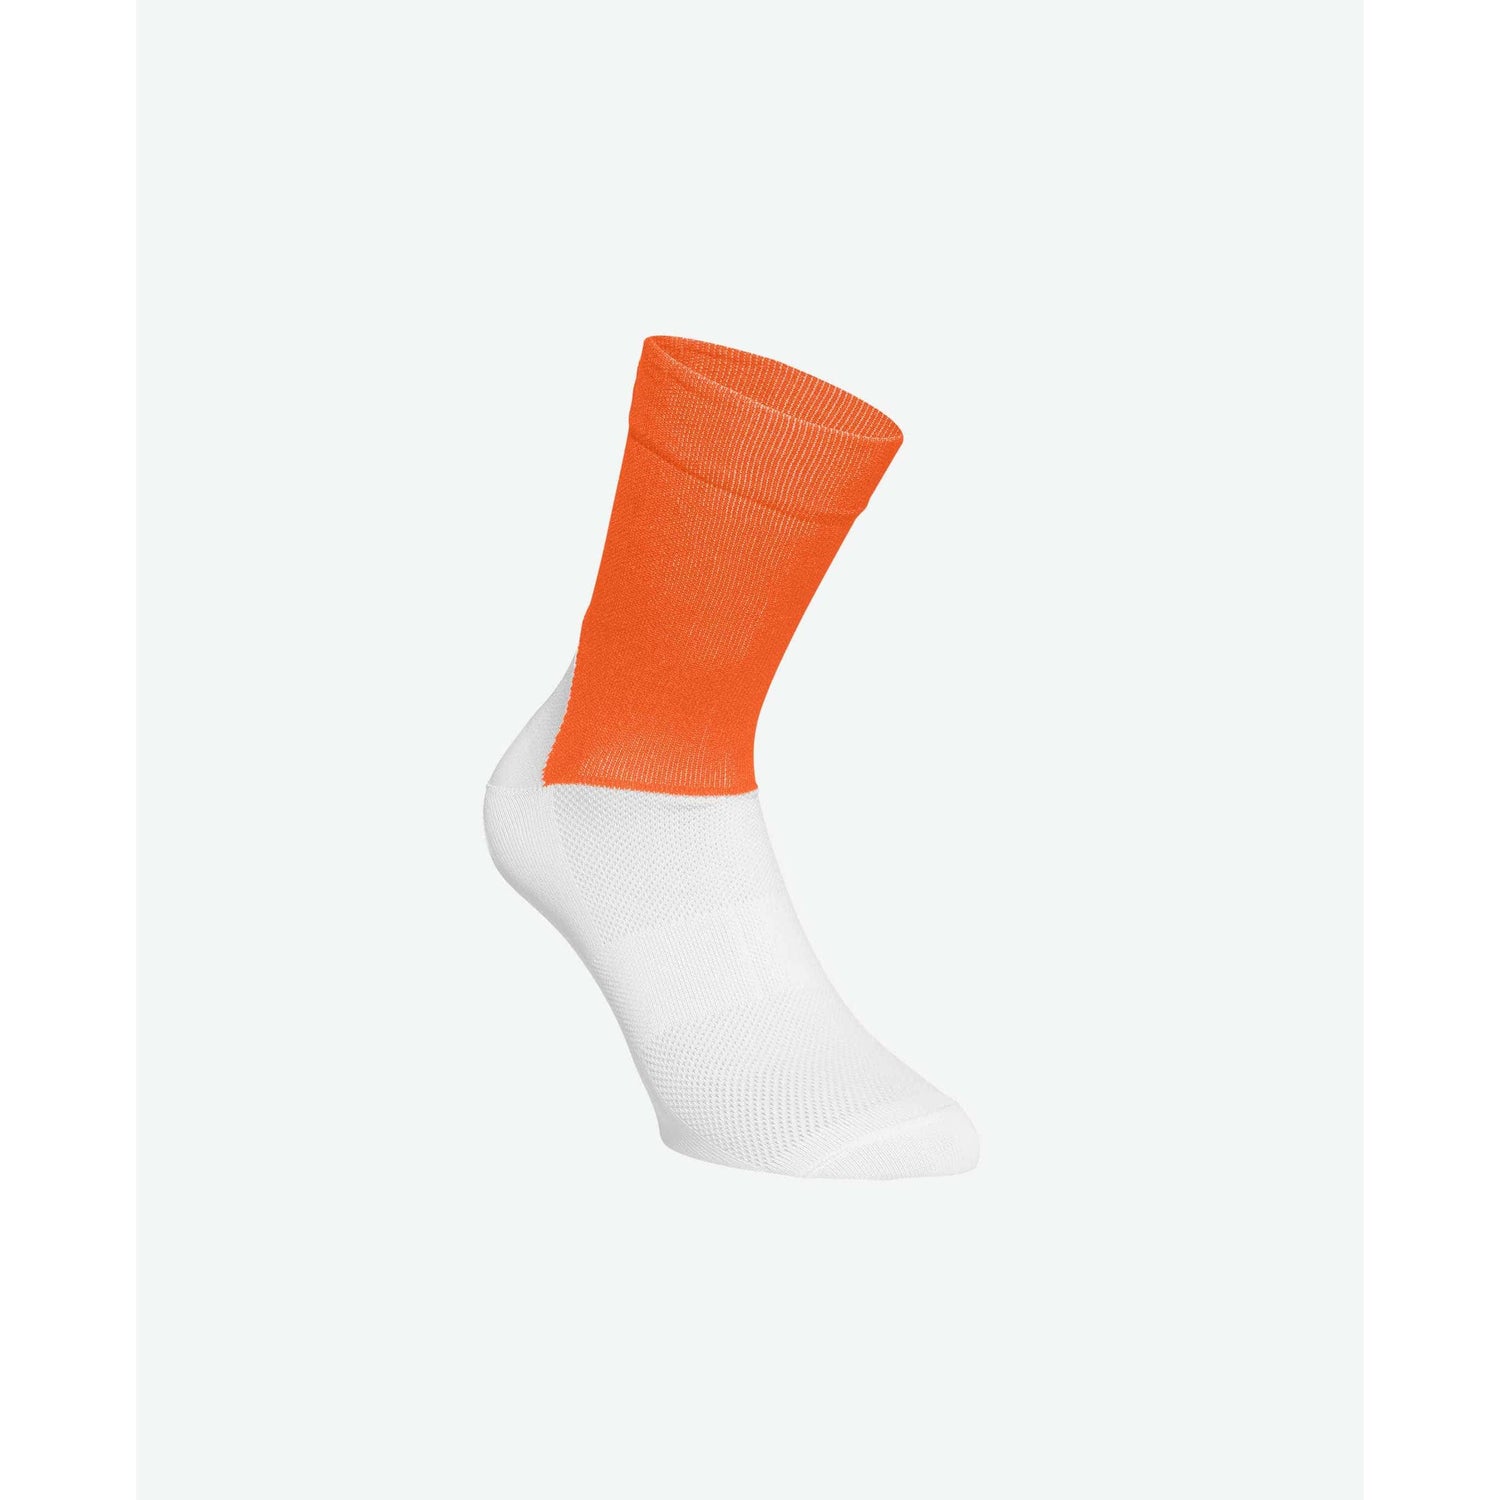 ソックス Essential Road Socks - Zink Orange/Hydrogen White [ユニセックス] 65110-8040 - STYLE BIKE ONLINE SHOP